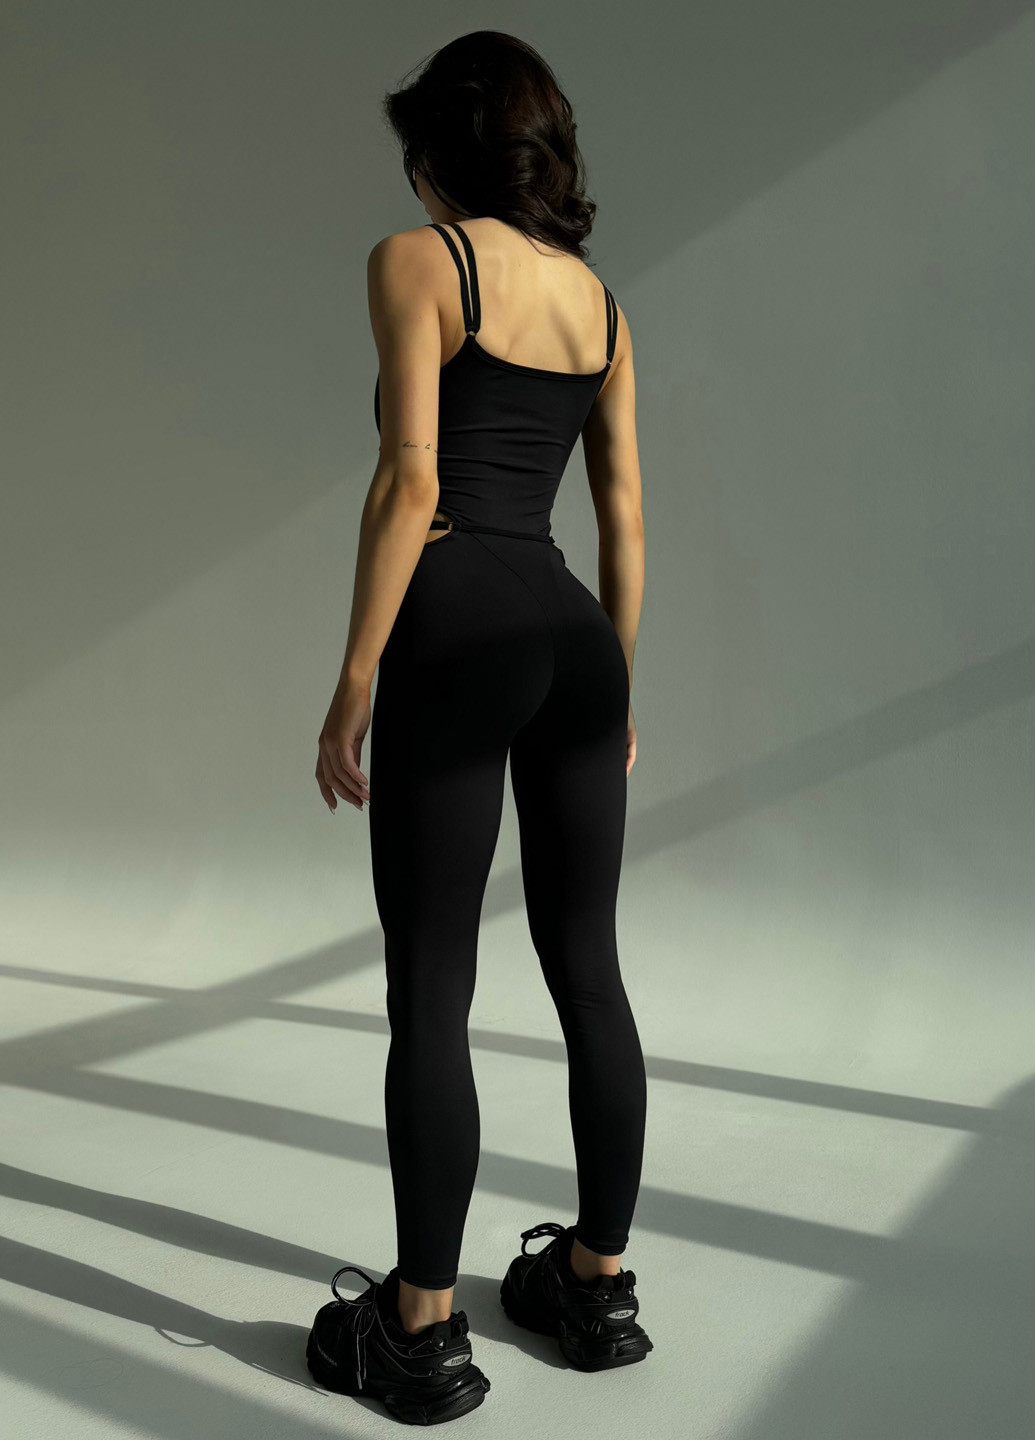 Комбинезон NOVA VEGA комбинезон-брюки однотонный чёрный спортивный полиэстер, бифлекс